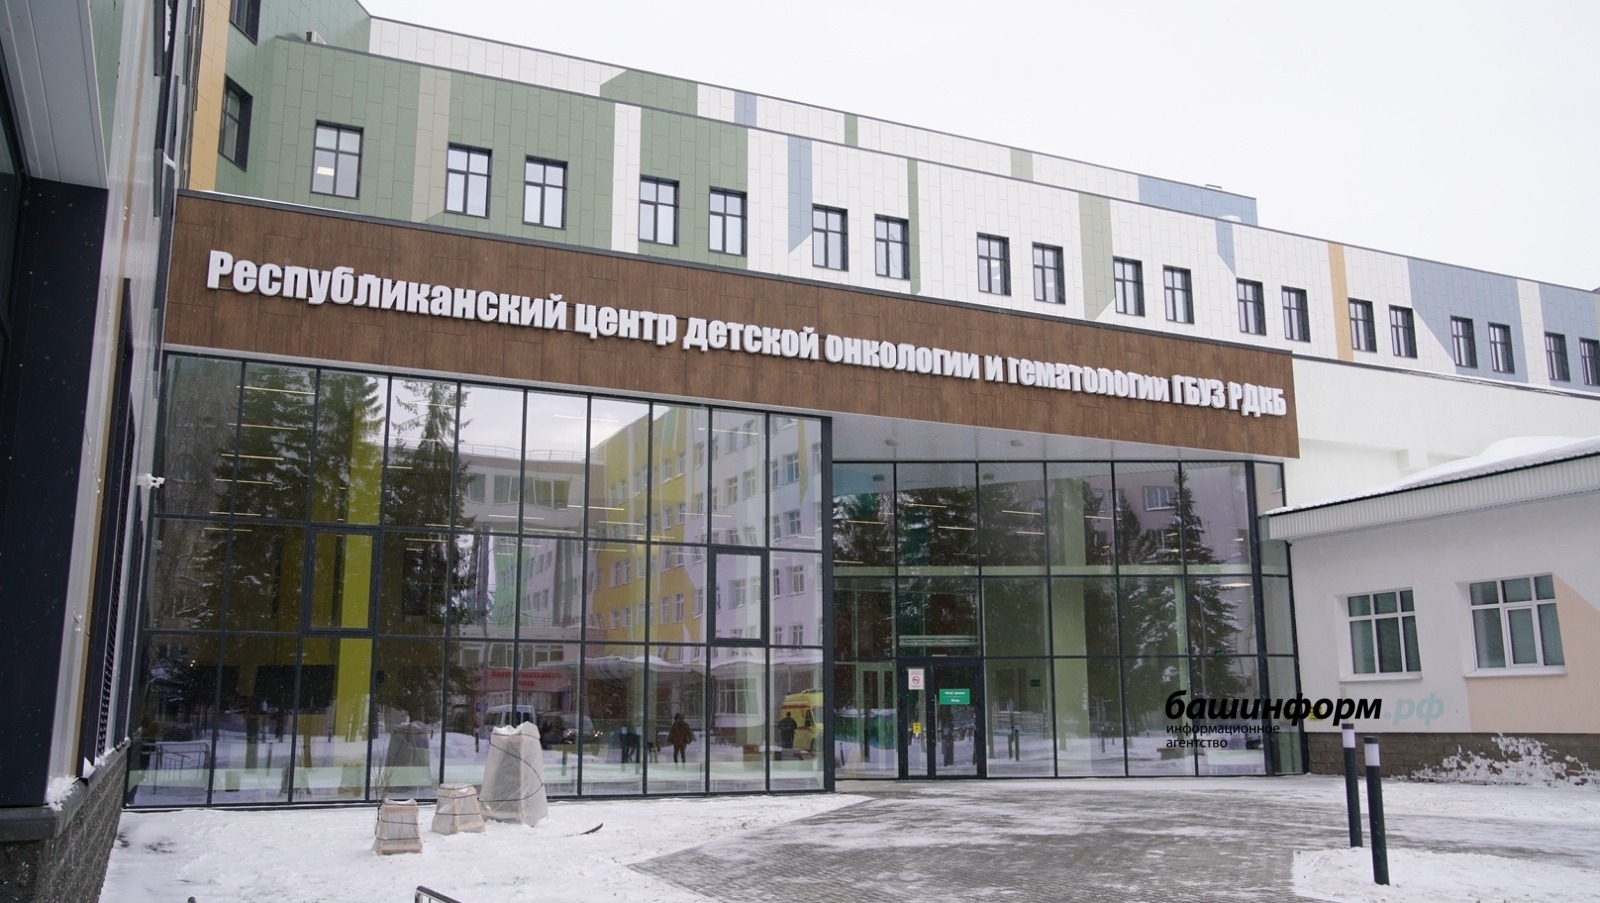 Владимир Путин высоко оценил открывшийся в Башкирии новый Центр детской онкологии